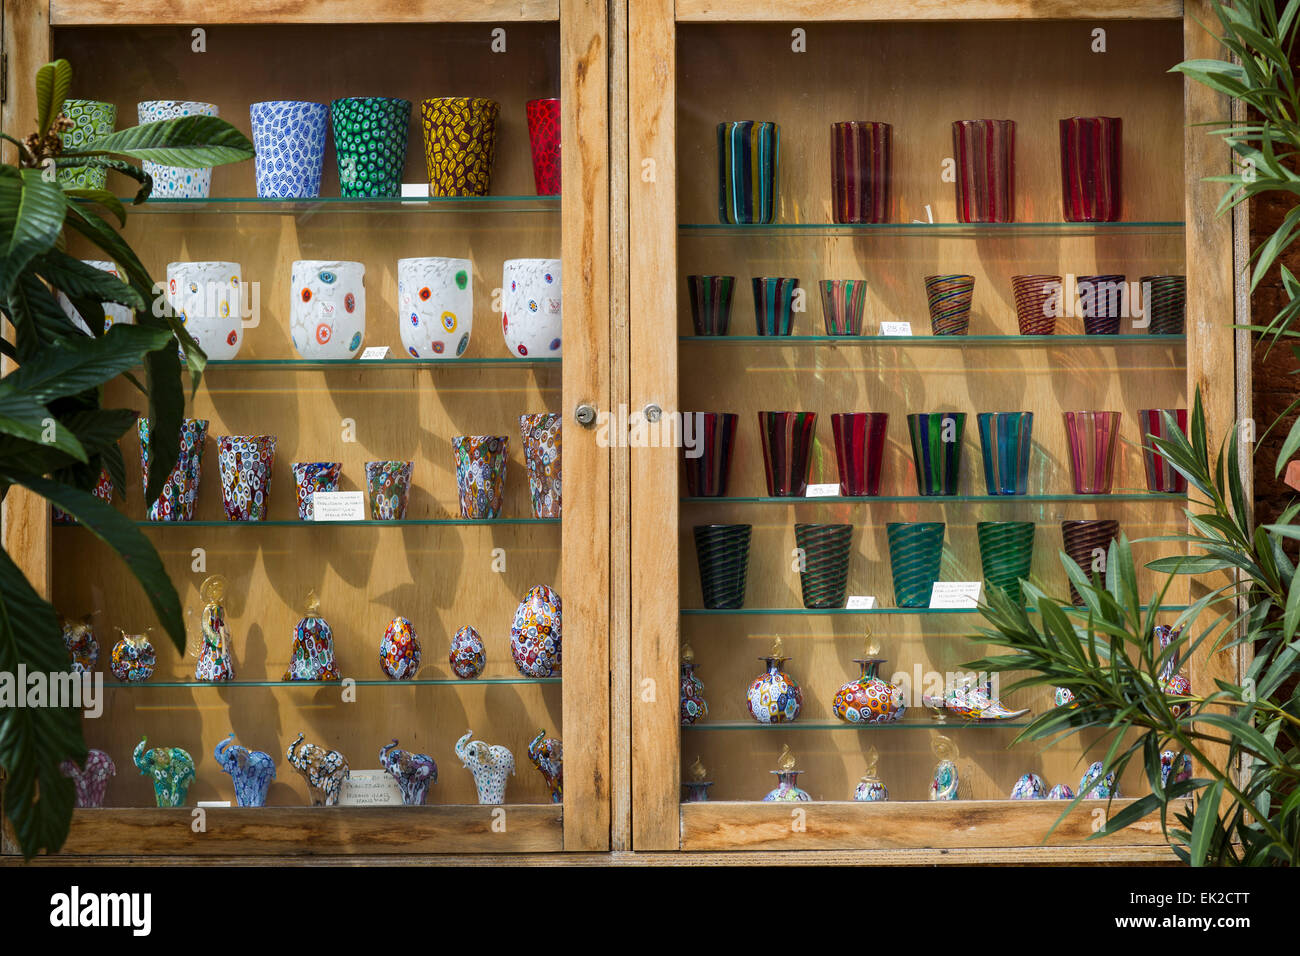 Venetian Glassware in Showcase, Venice, Italy Stock Photo